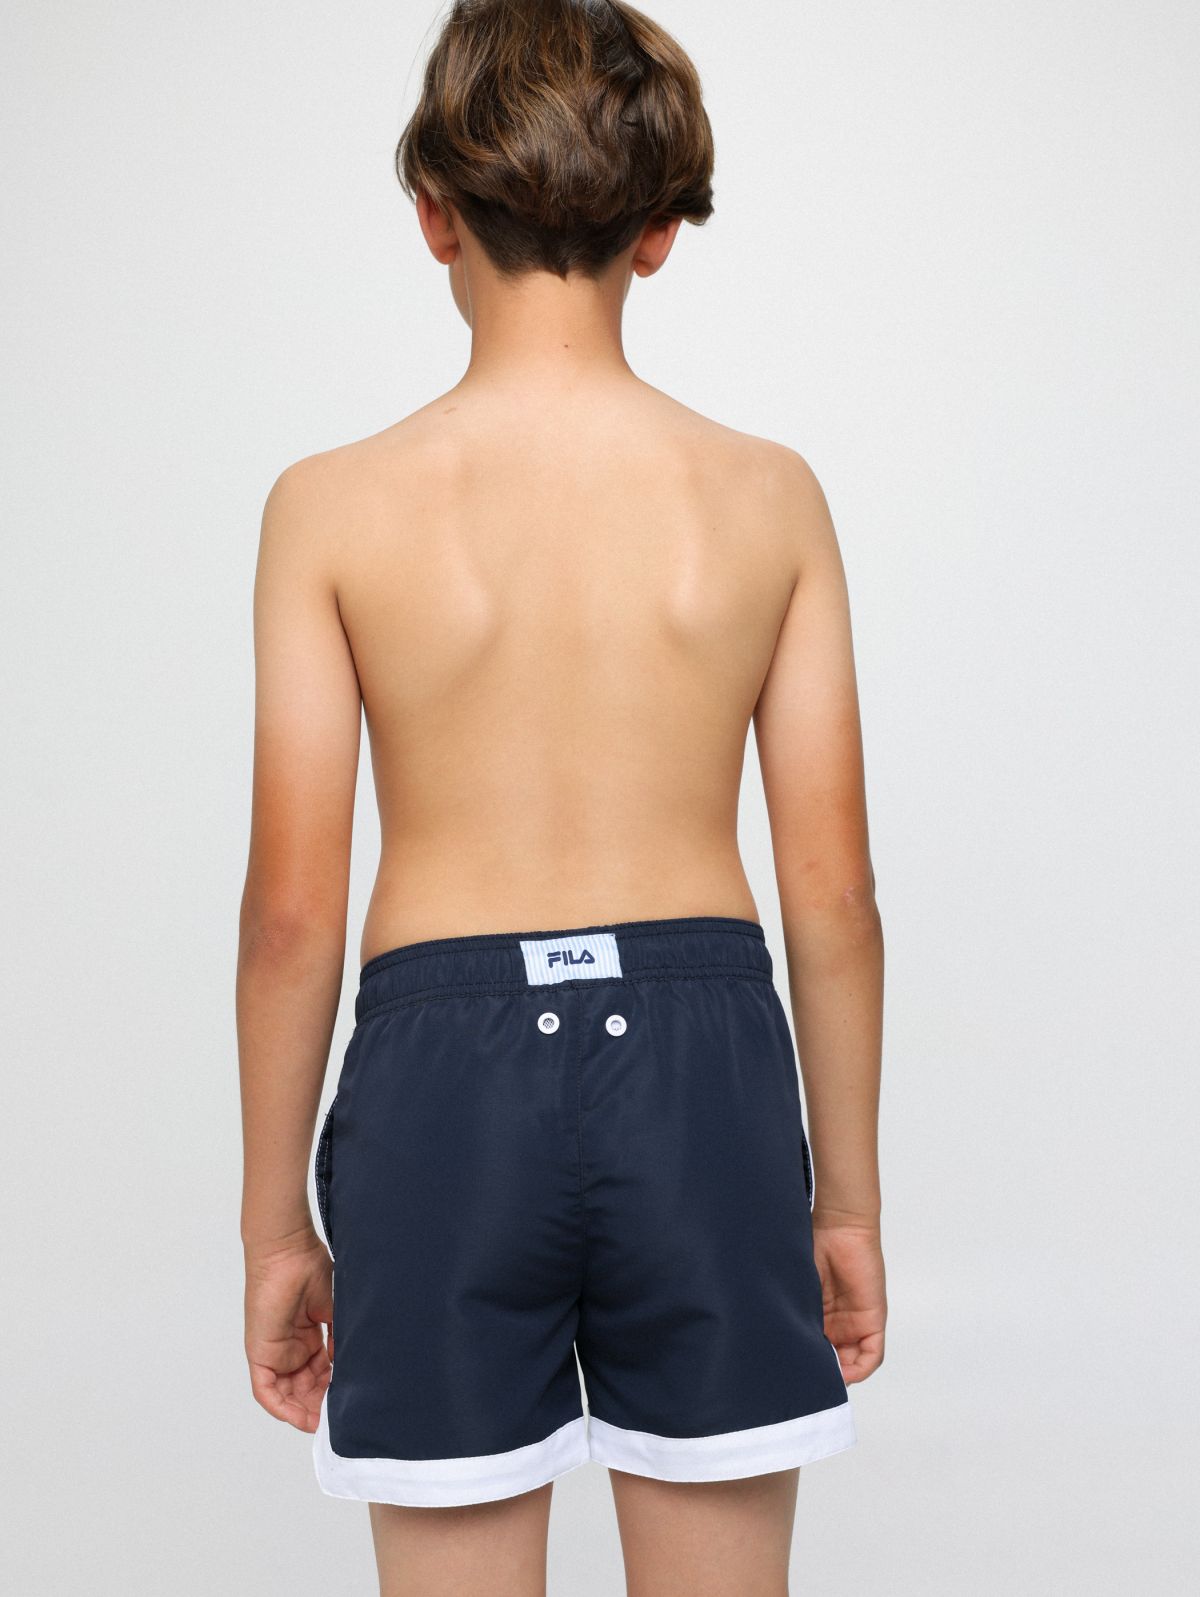  מכנסי בגד ים עם פאץ' לוגו של FILA